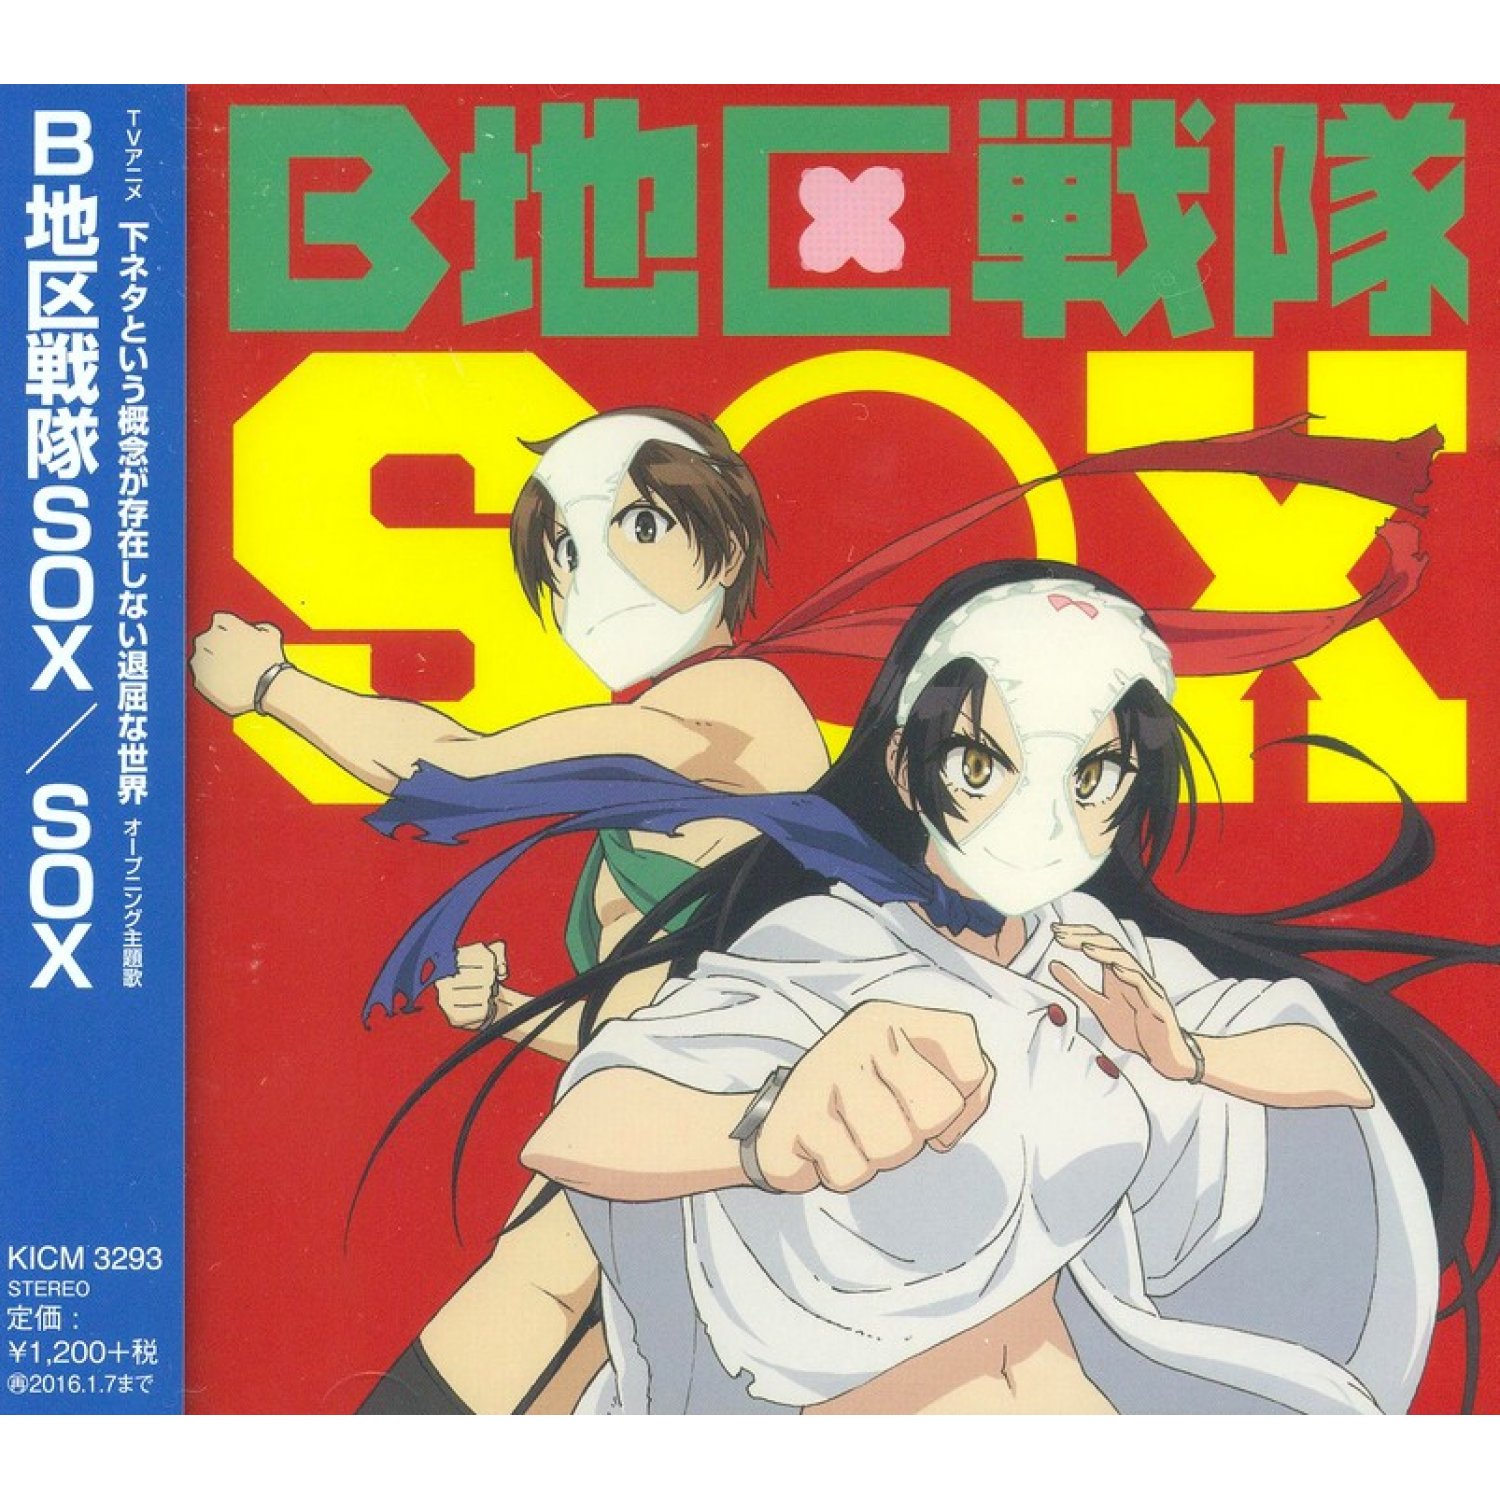 Sekihan - B-chiku Sentai SOX (Shimoseka OP)